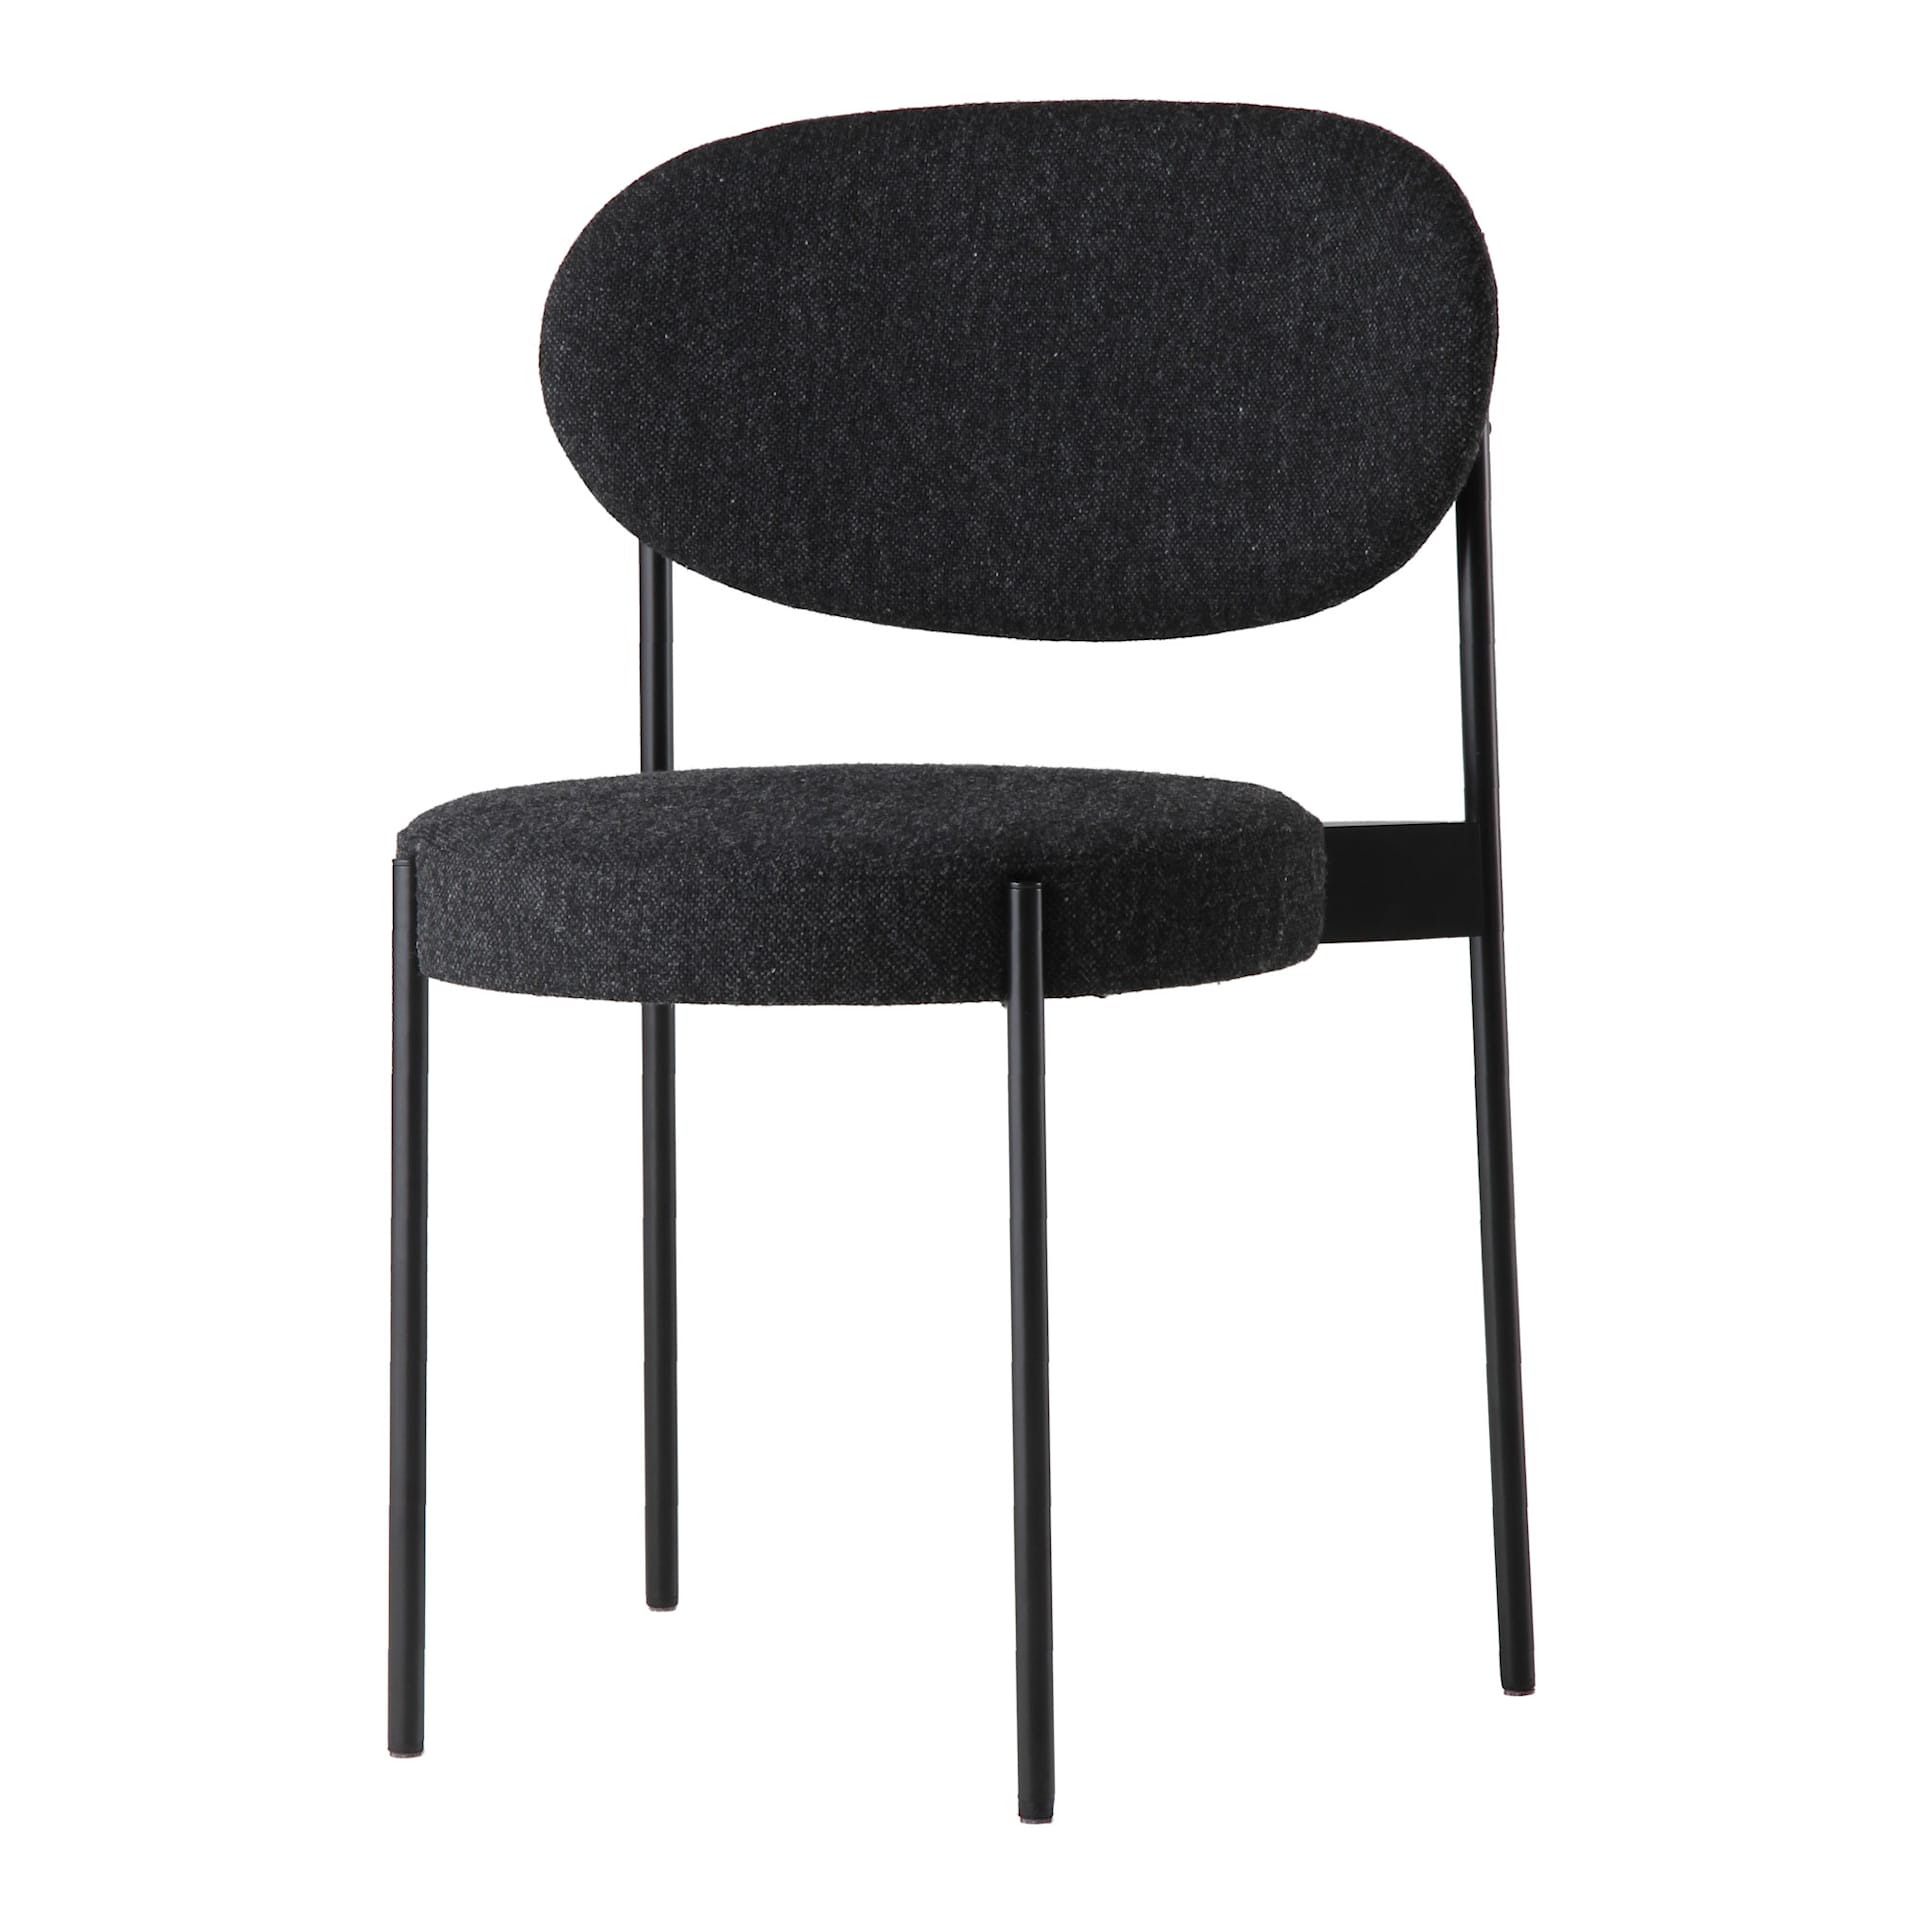 Series 430 Chair - Verpan - Verner Panton - NO GA